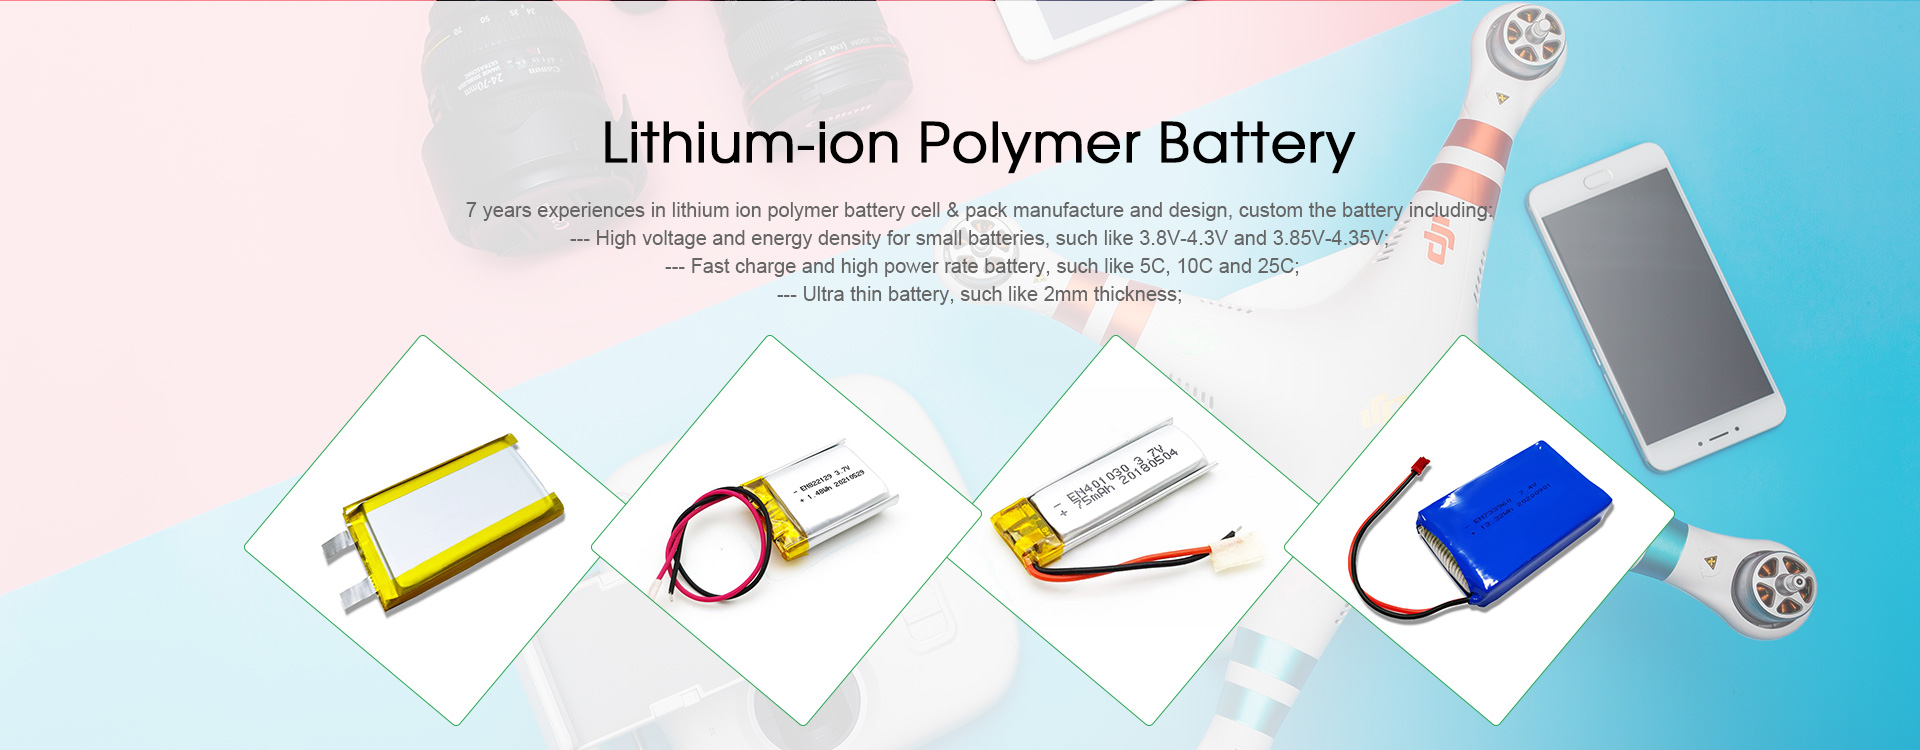 Фабрика Ли-полимерских батерија